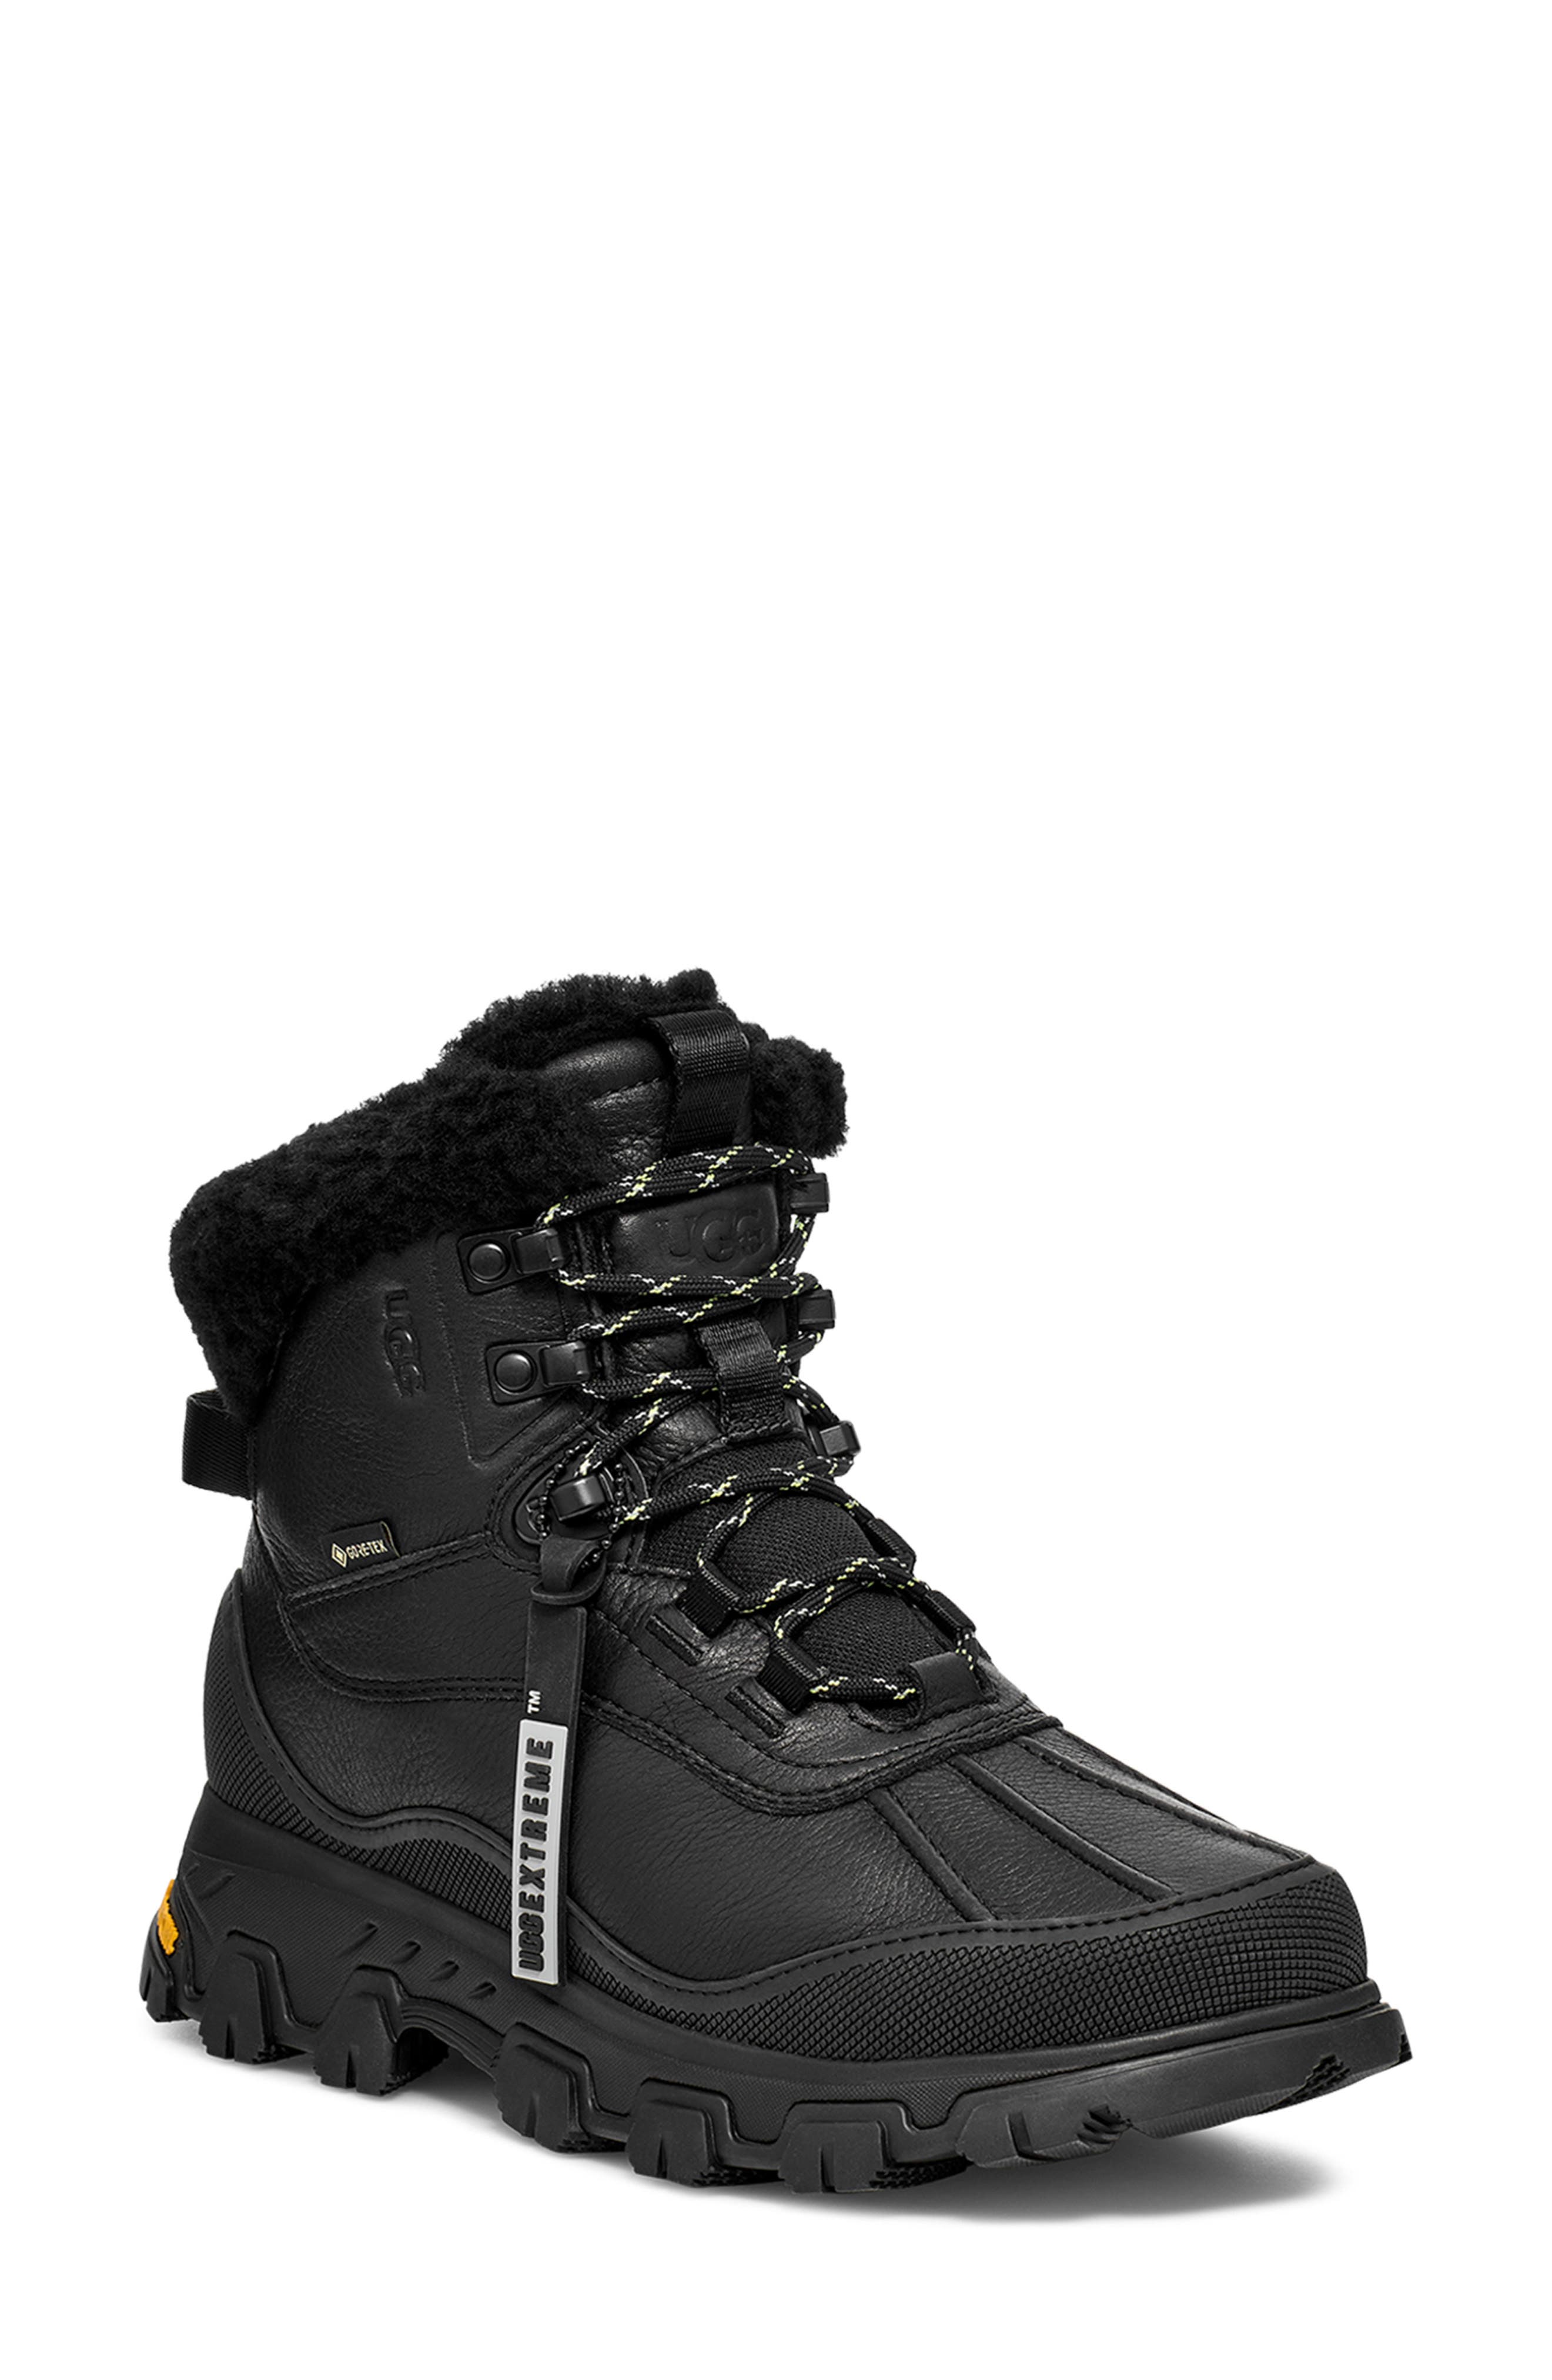 25mm Adirondack Iii Leather Hiking Boots